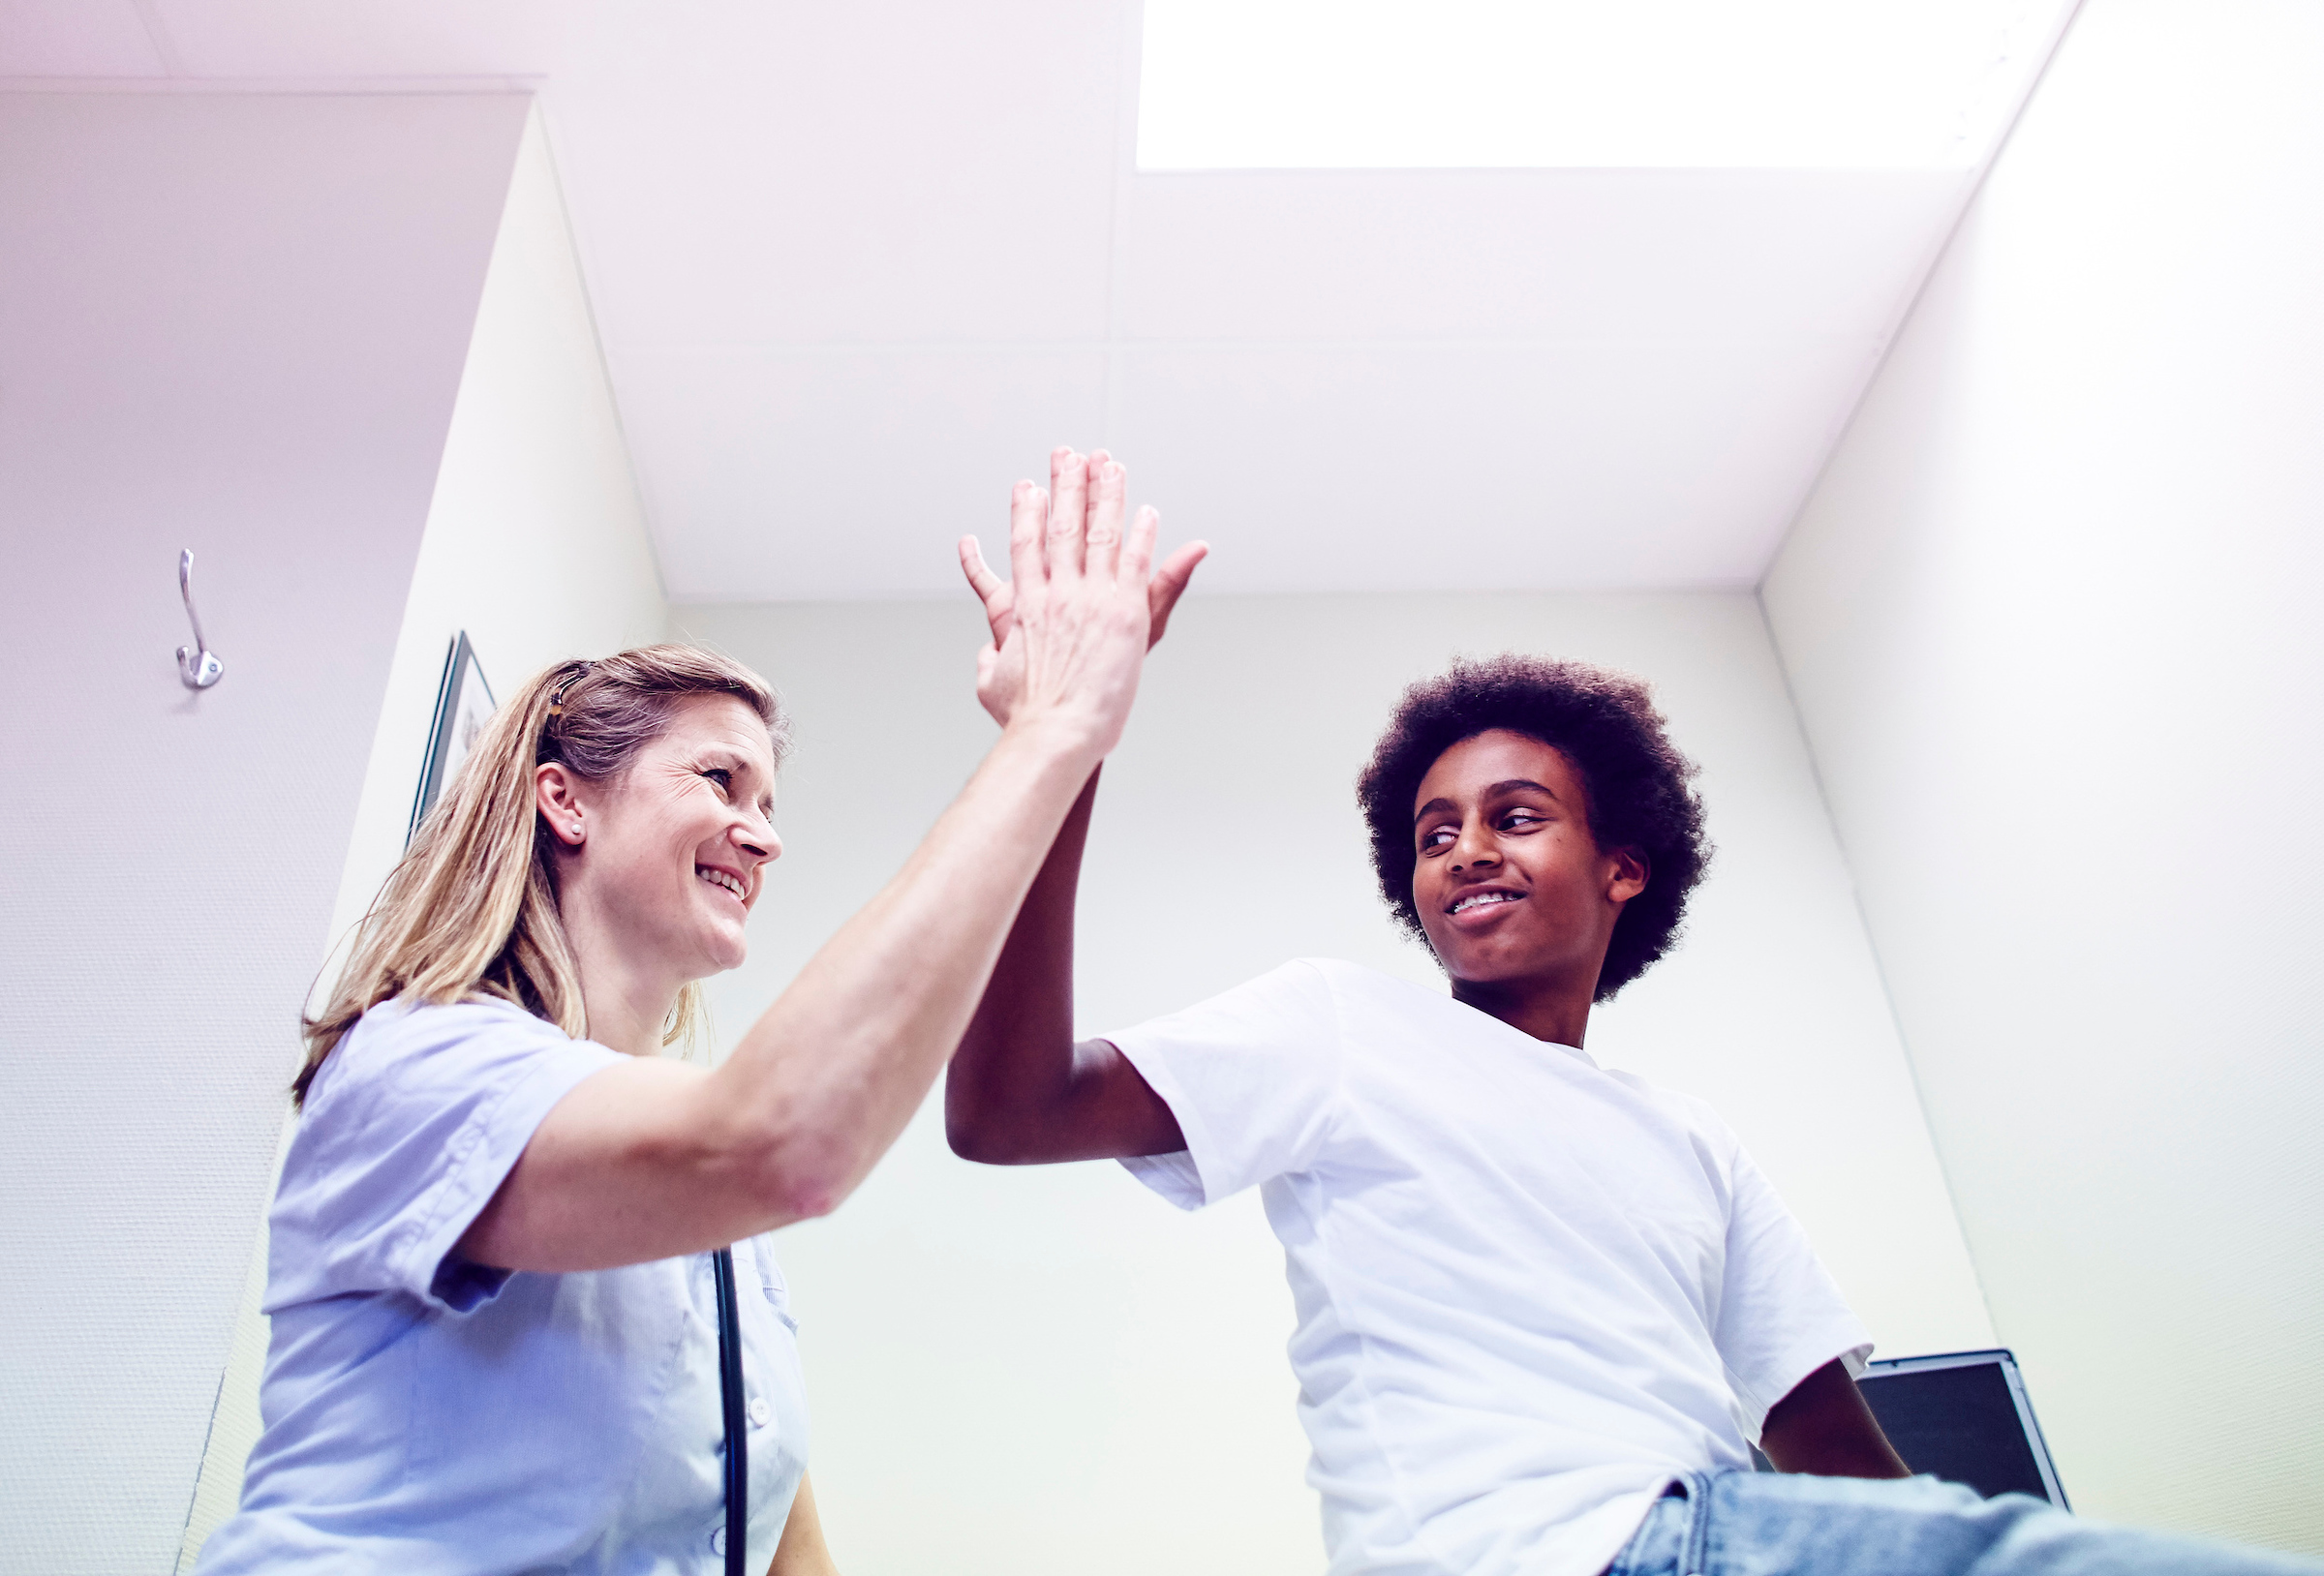 Sykepleier og pasient gir hverandre en high five